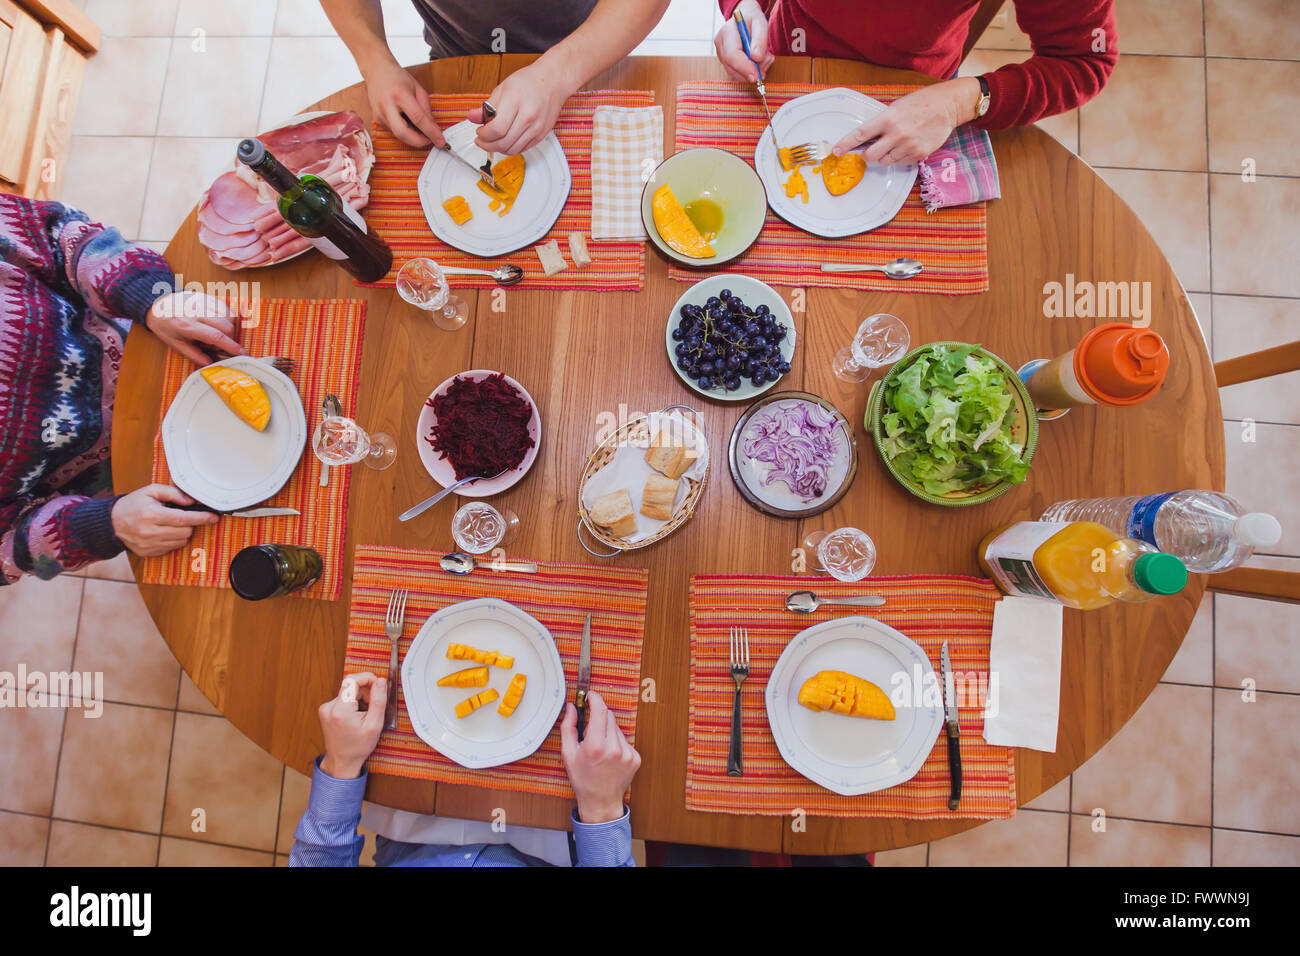 La famiglia a pranzo mangiano antipasti, antipasti, vista dall'alto della tabella con i prodotti alimentari Foto Stock